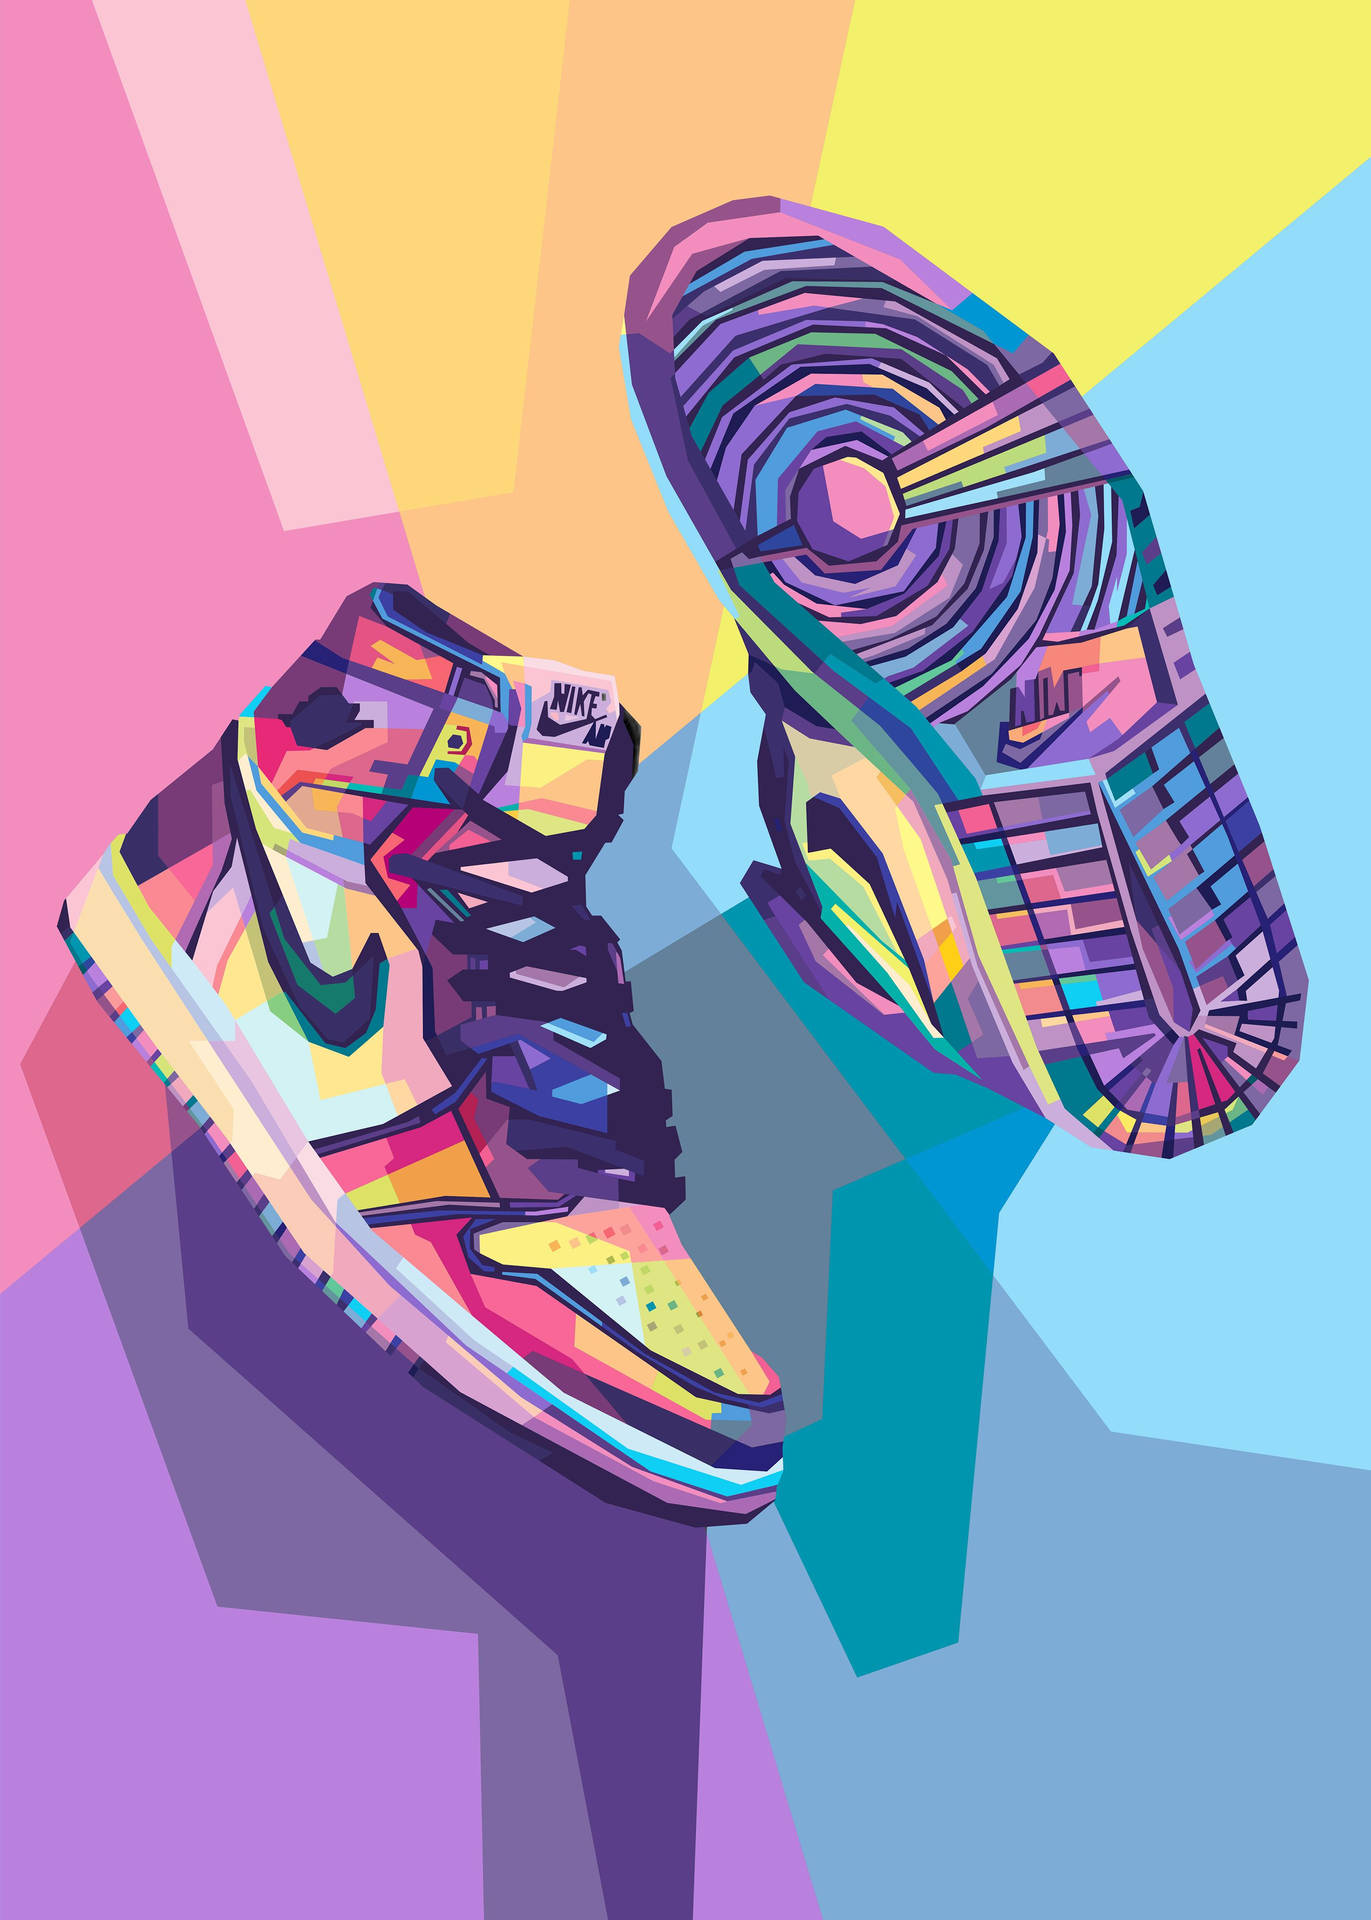 Färggladanike Jordan Cartoon Sneakers Abstrakt Illustration. Wallpaper